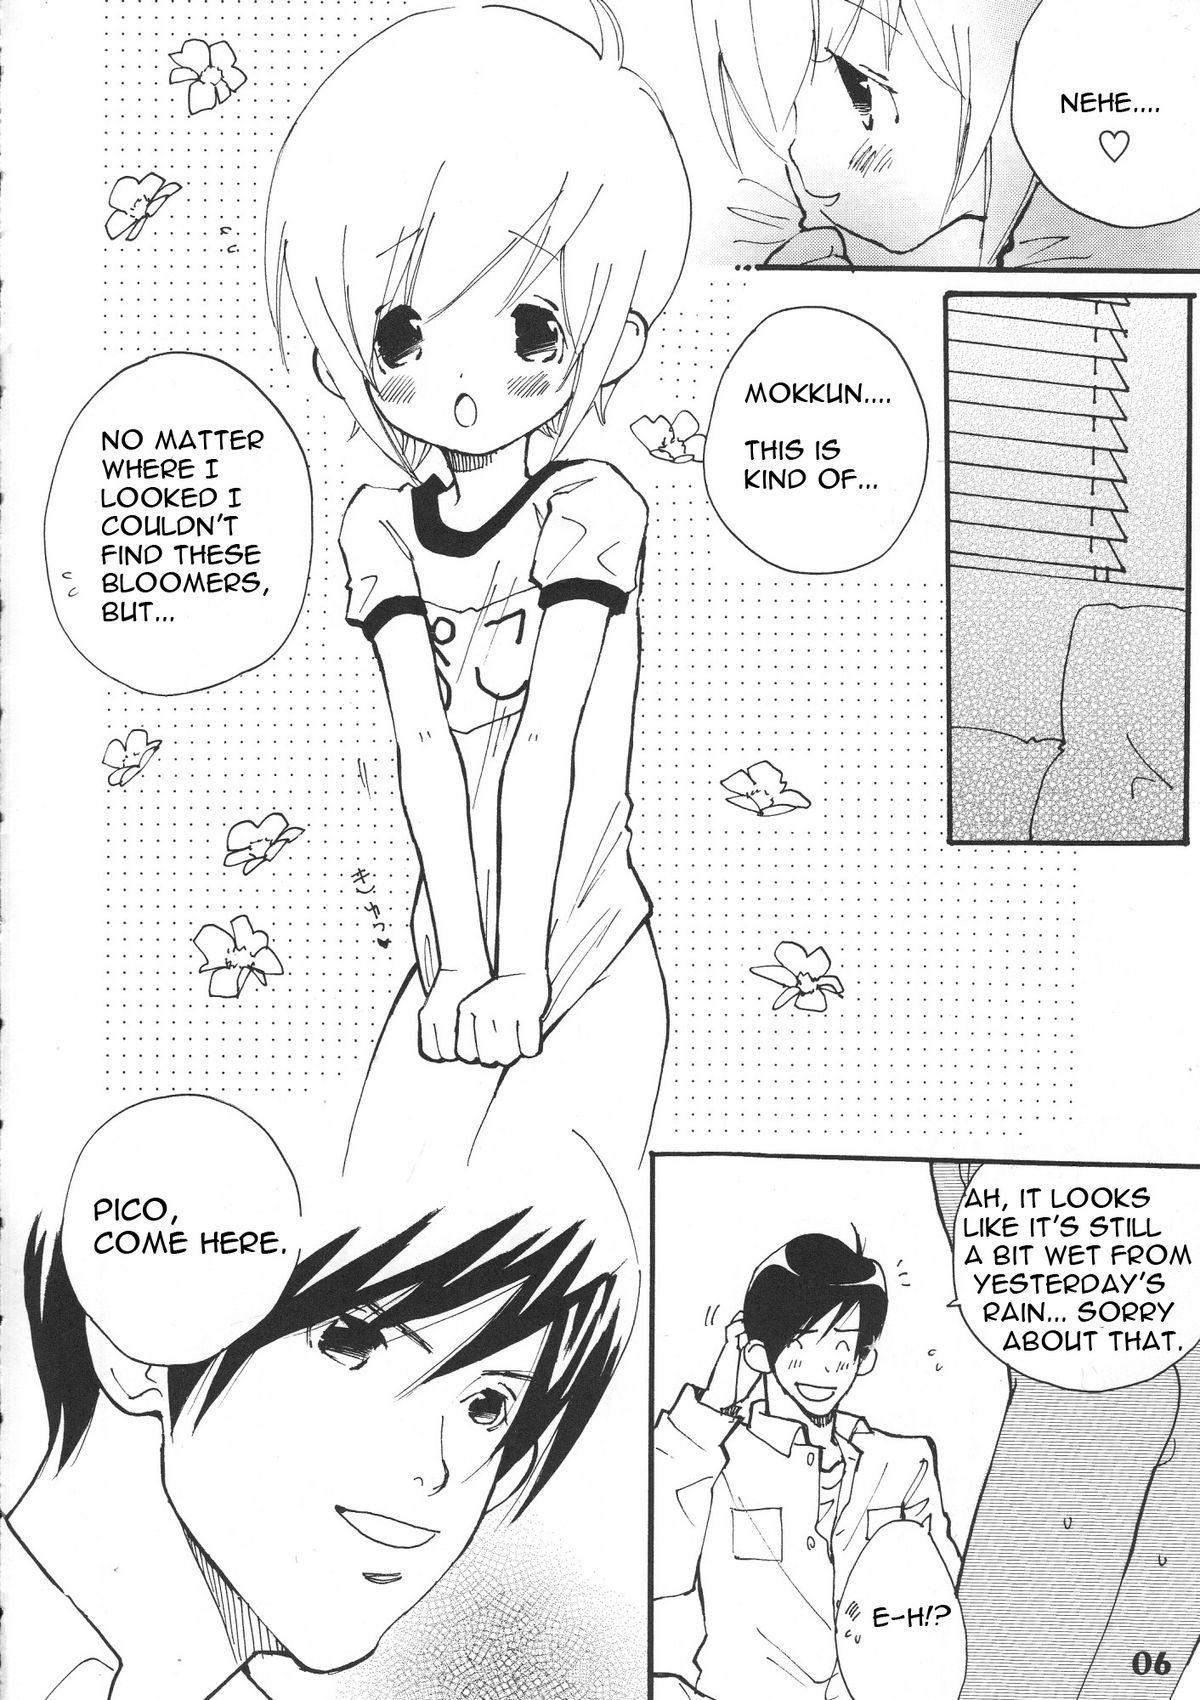 Anime Bokutachi! Shotappuru!! - Boku no pico Couple Fucking - Page 6